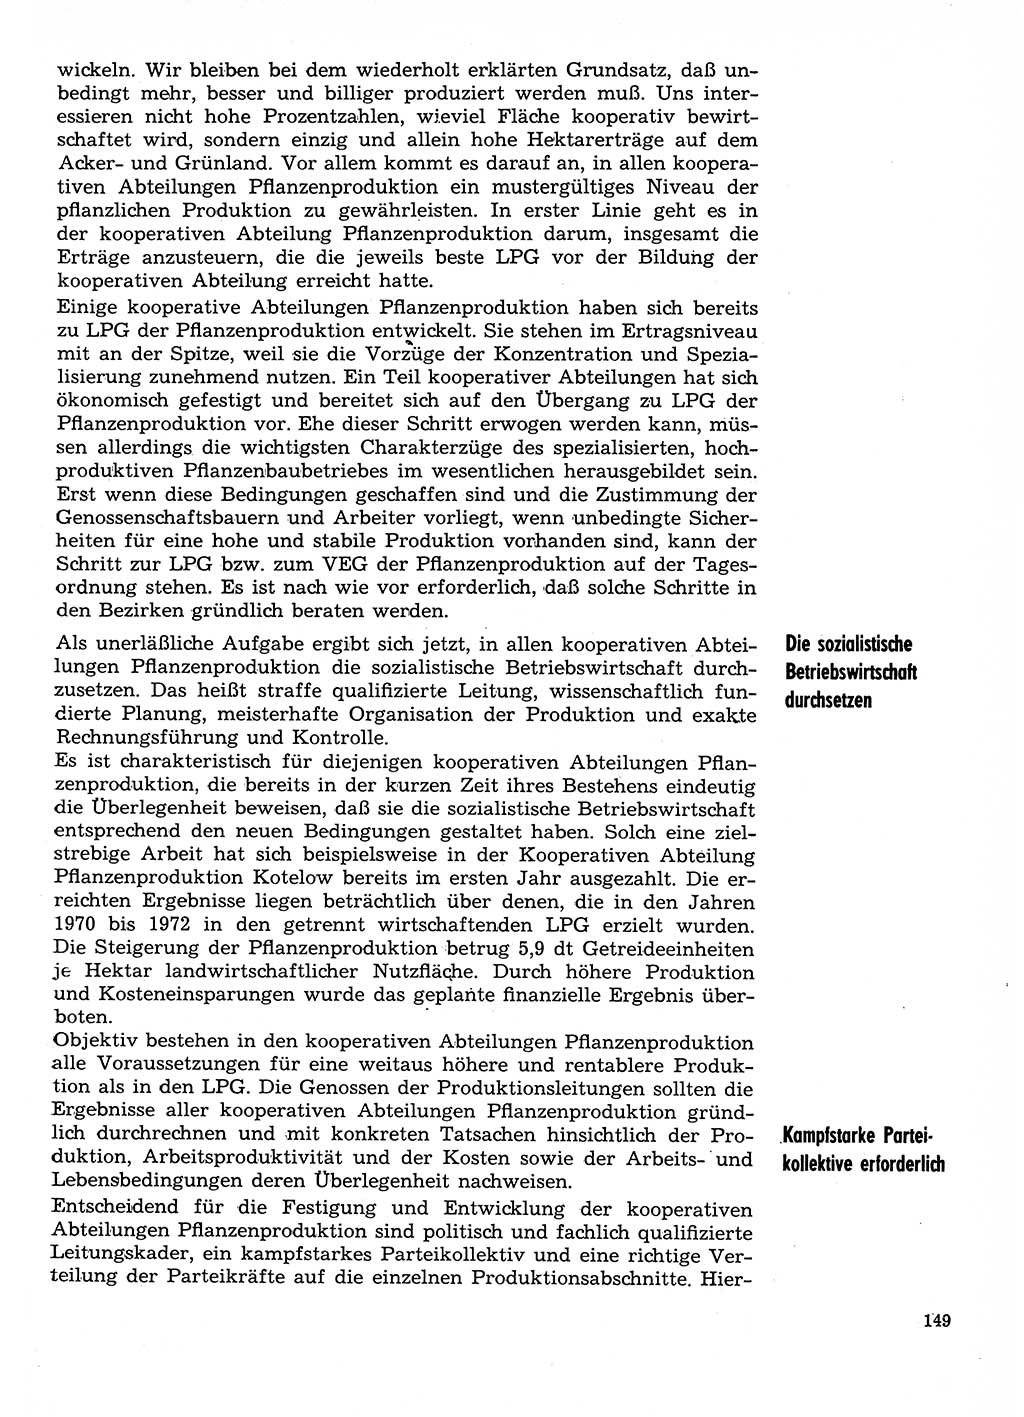 Neuer Weg (NW), Organ des Zentralkomitees (ZK) der SED (Sozialistische Einheitspartei Deutschlands) für Fragen des Parteilebens, 29. Jahrgang [Deutsche Demokratische Republik (DDR)] 1974, Seite 149 (NW ZK SED DDR 1974, S. 149)